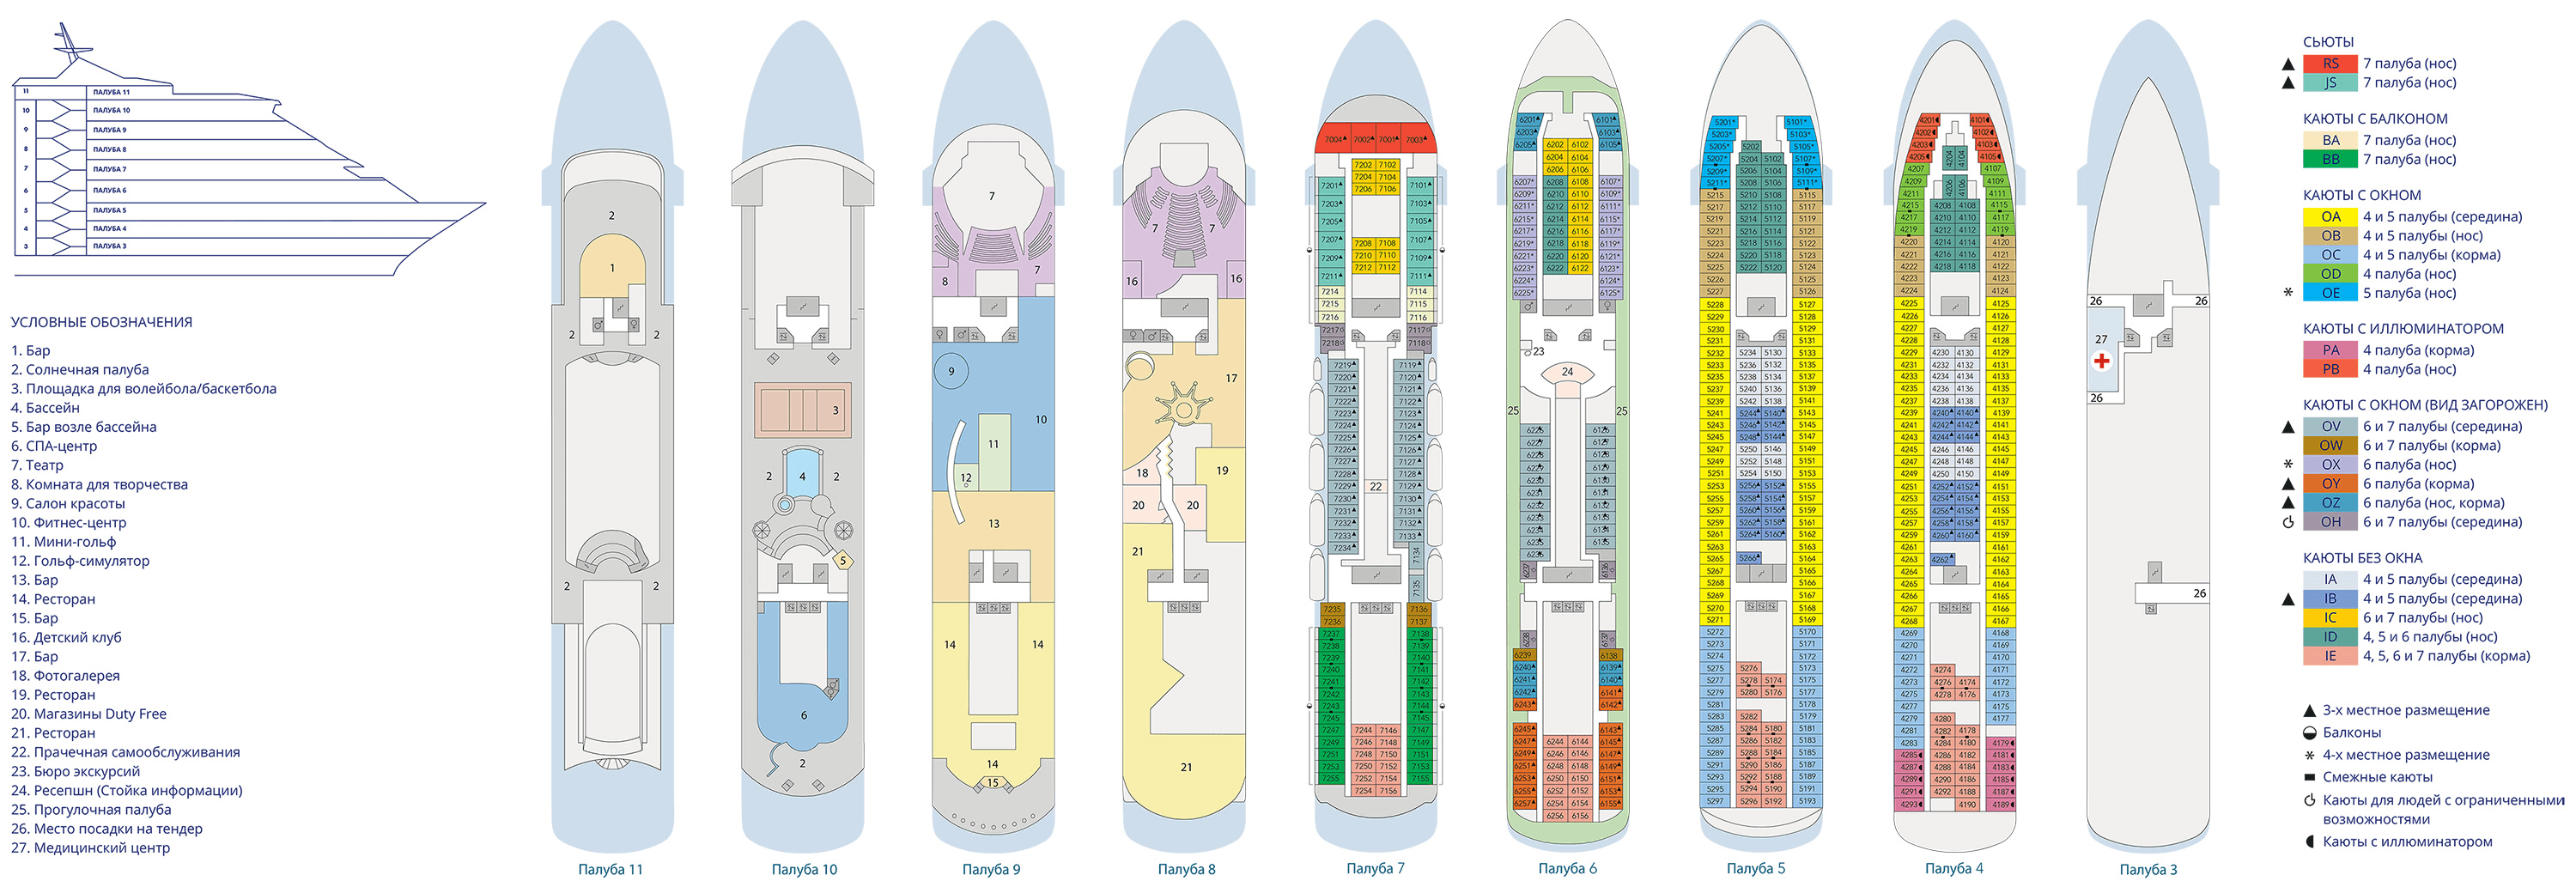 Схема круизного лайнера «Astoria Grande»